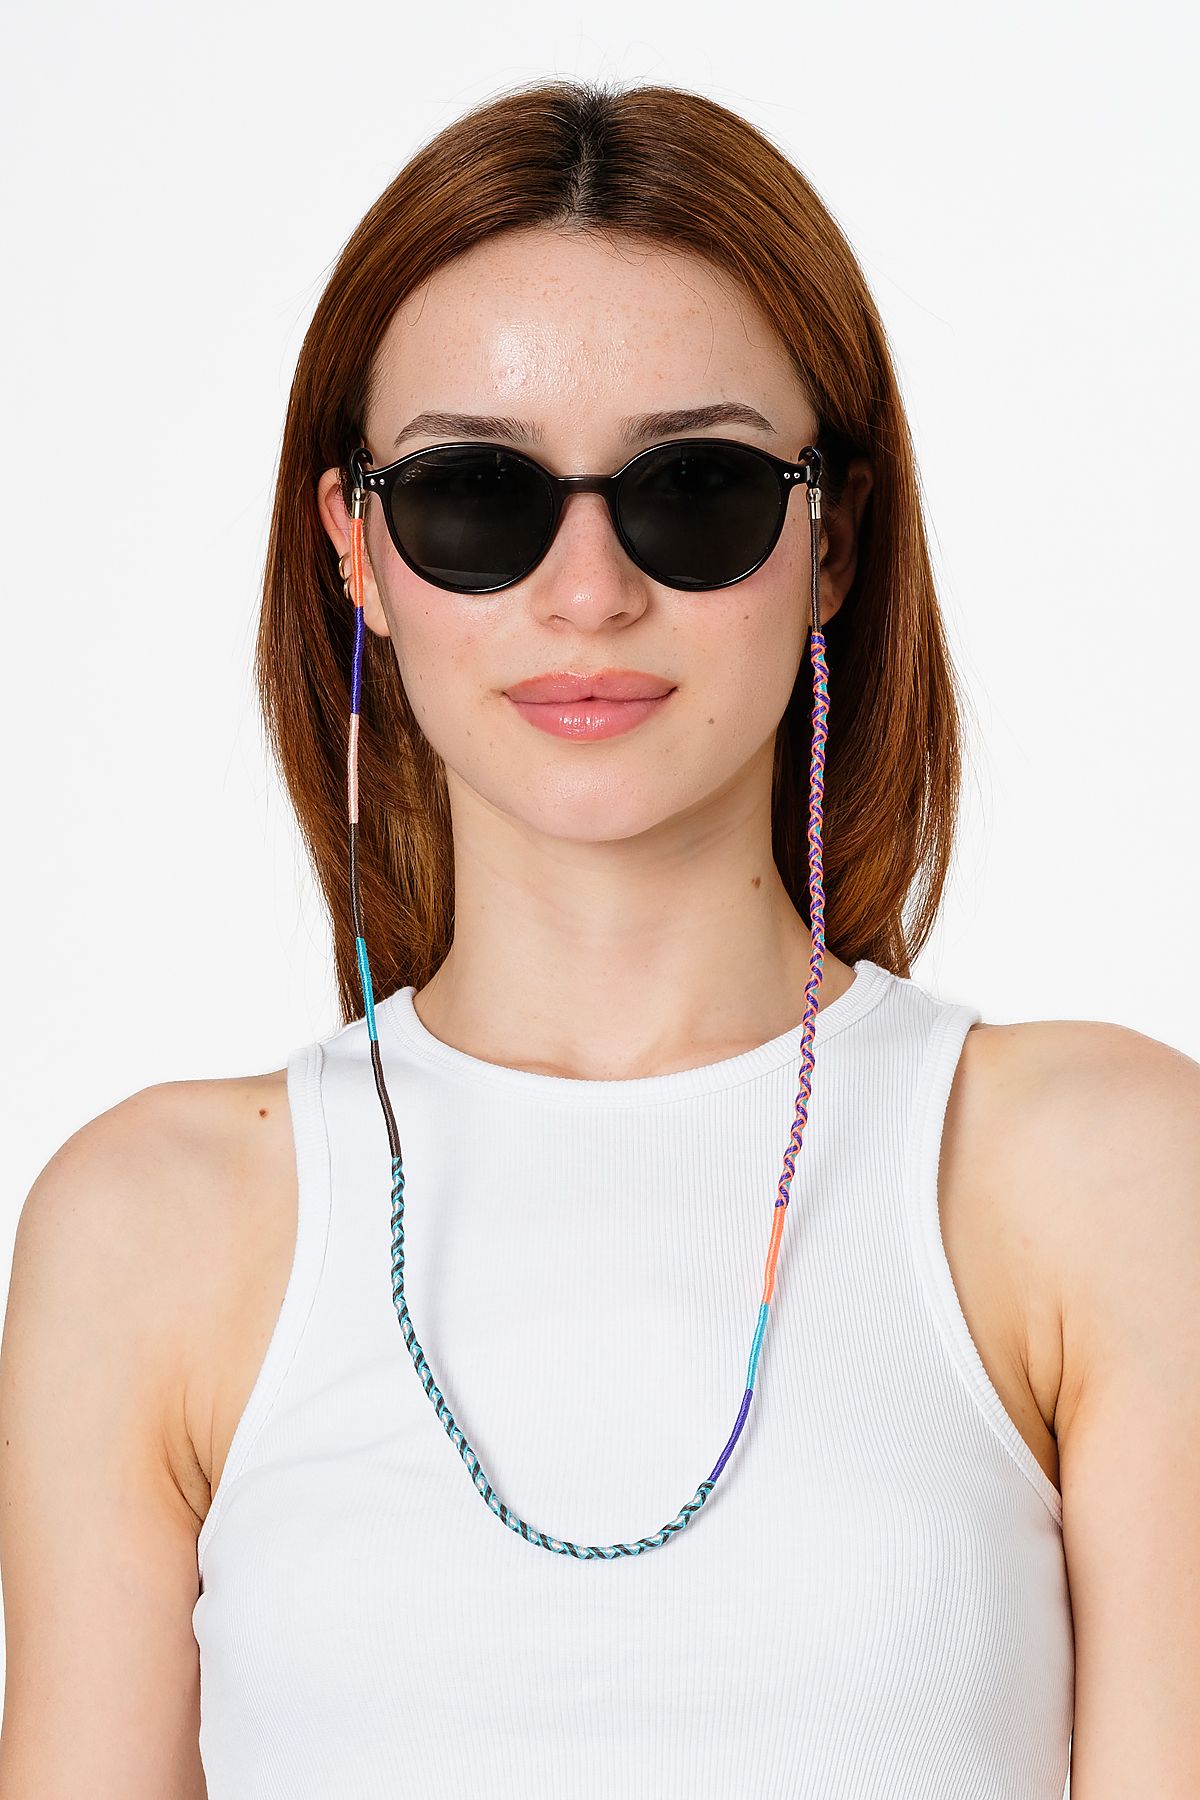 Hippi Drop Çok Renkli 70 Cm El Emeği Örgülü Özel Tasarım Yapılı Unisex Gözlük Ipi Aksesuarı